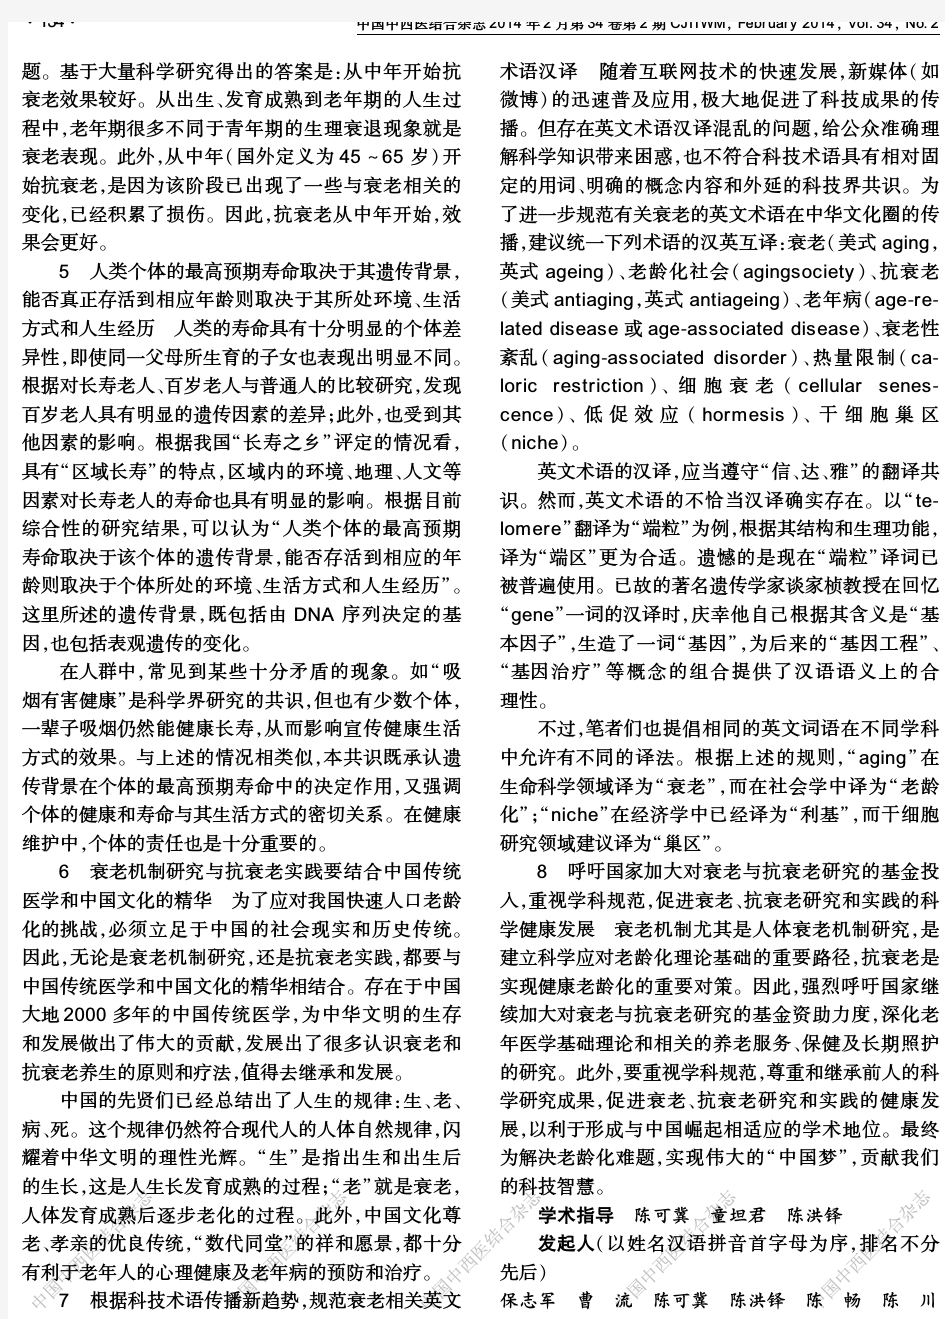 中国衰老与抗衰老专家共识(2013年)